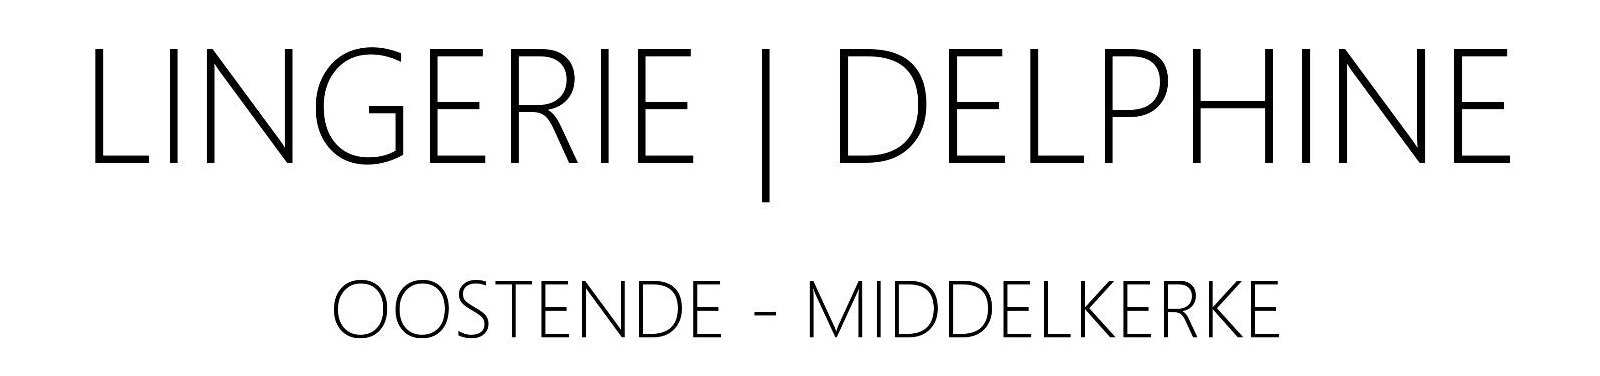 Lingerie Delphine logo